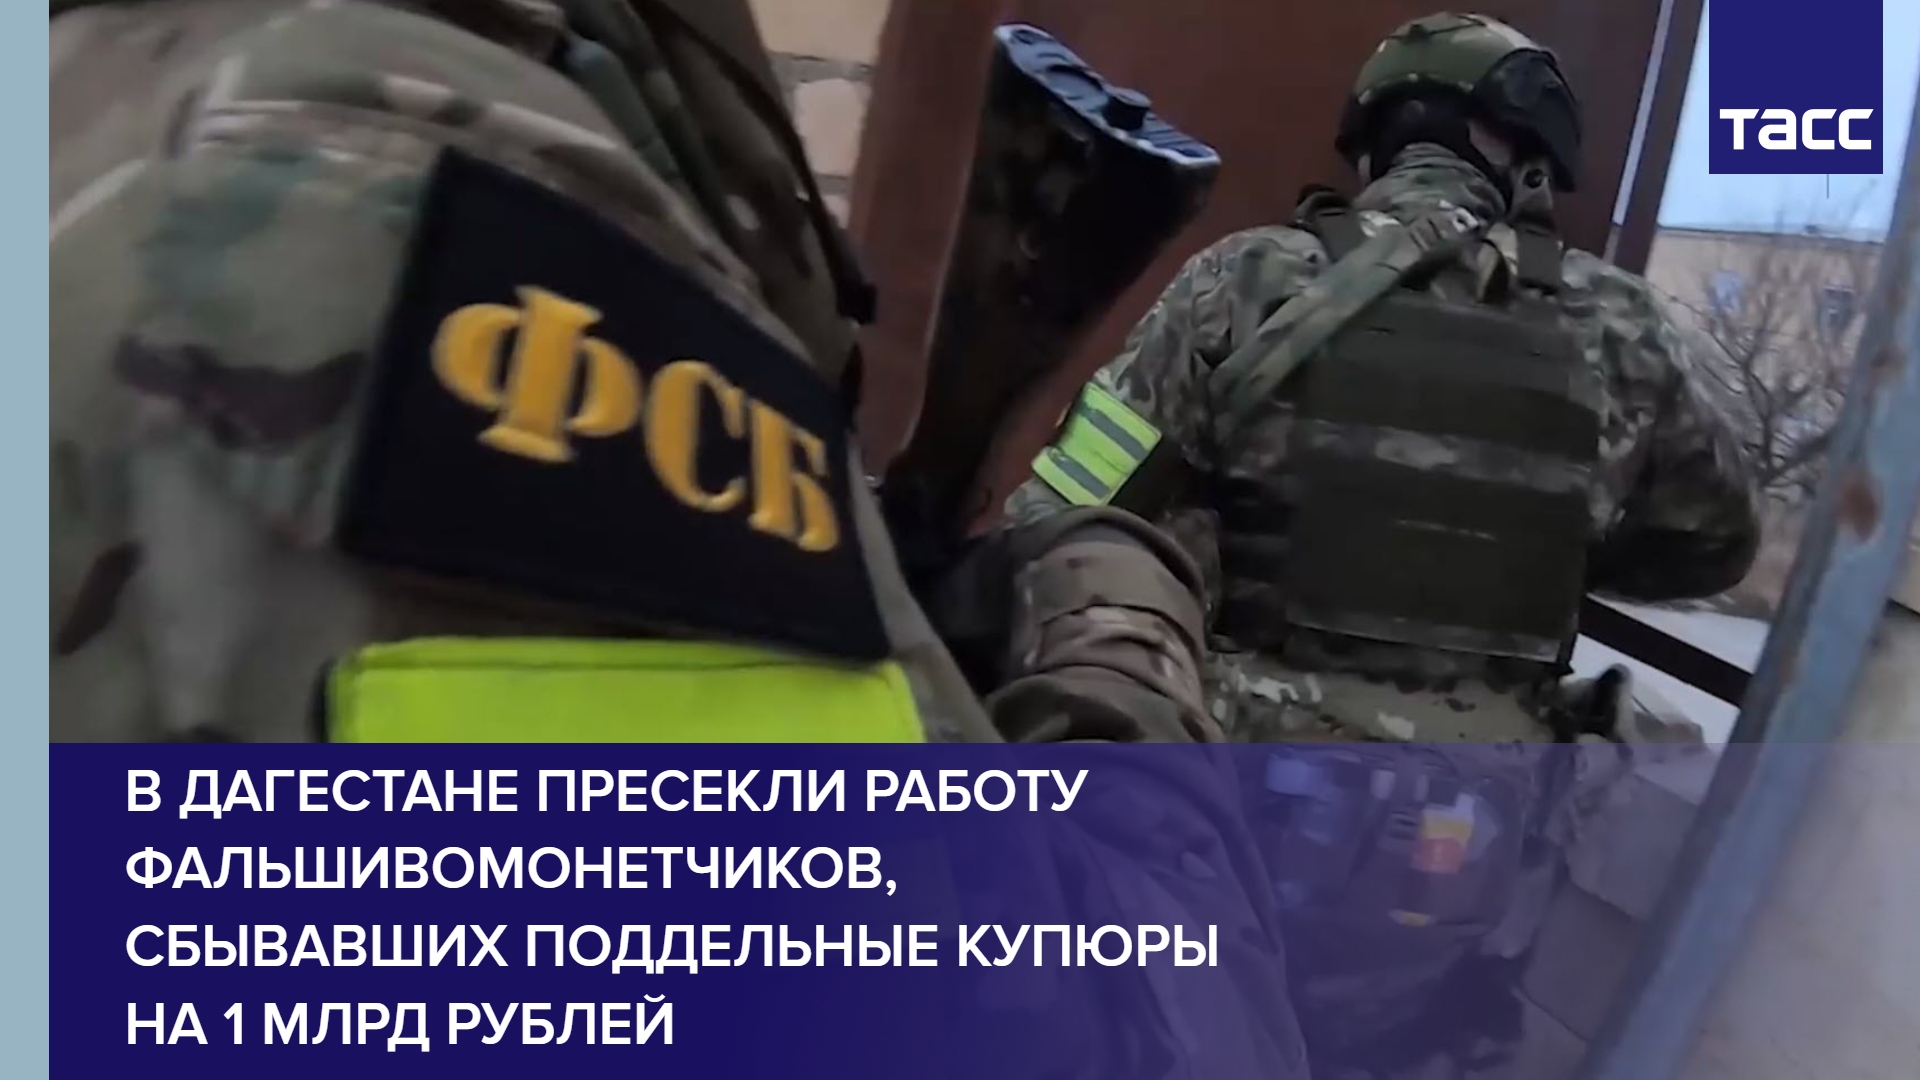 В Дагестане пресекли работу фальшивомонетчиков, сбывавших поддельные купюры на 1 млрд рублей